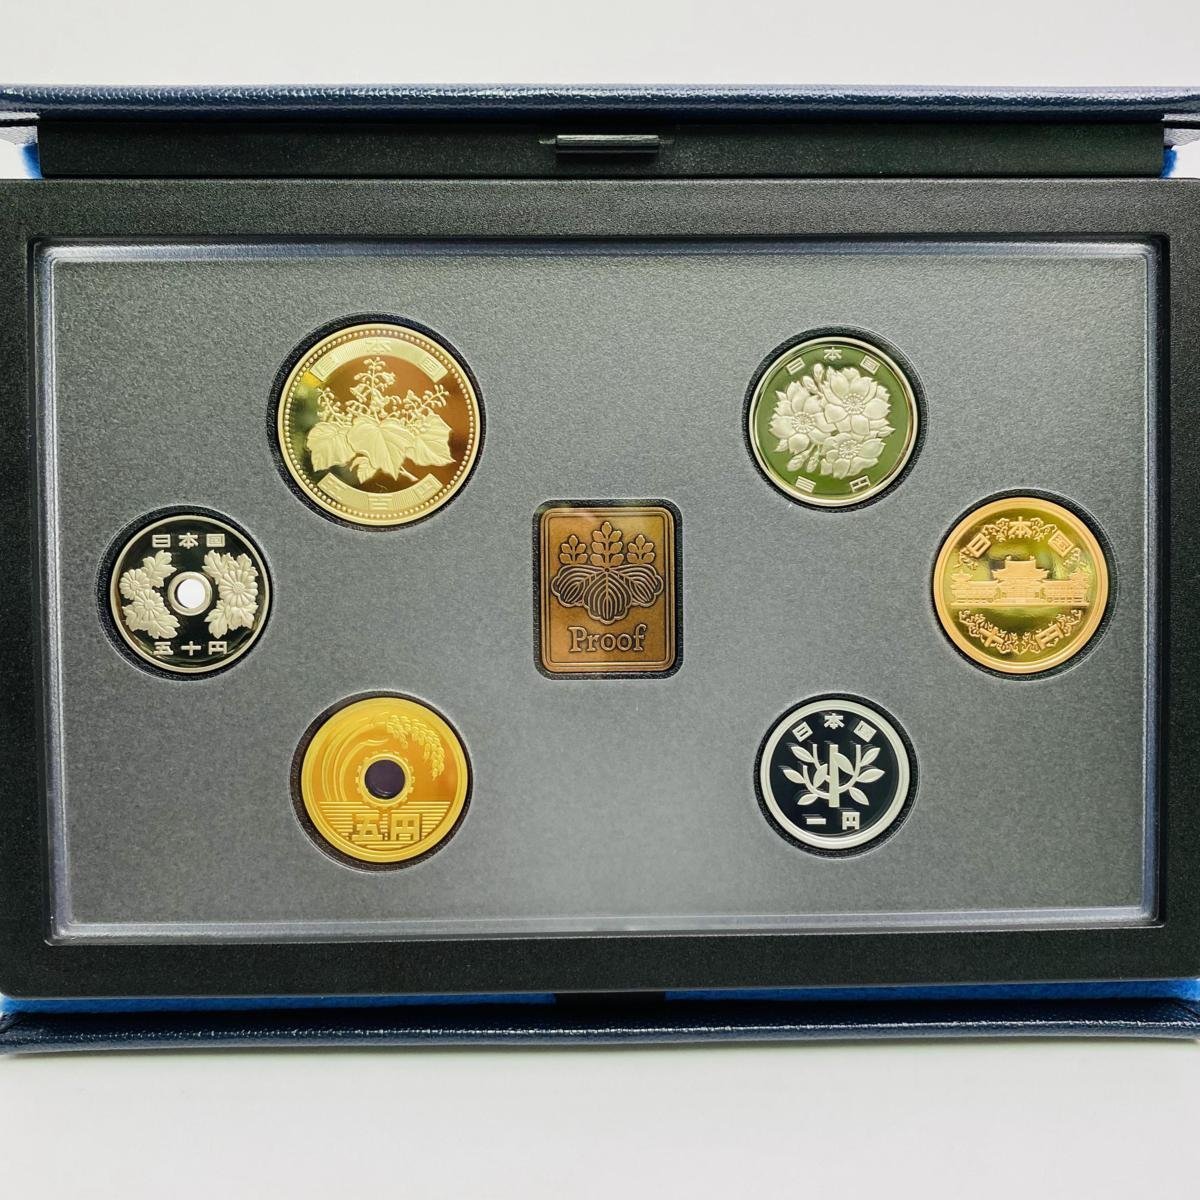 ブランド品 1円アルミニウム貨幣誕生60周年 2015 プルーフ貨幣セット 平成27年 記念硬貨 記念コイン 造幣局 プルーフセット 